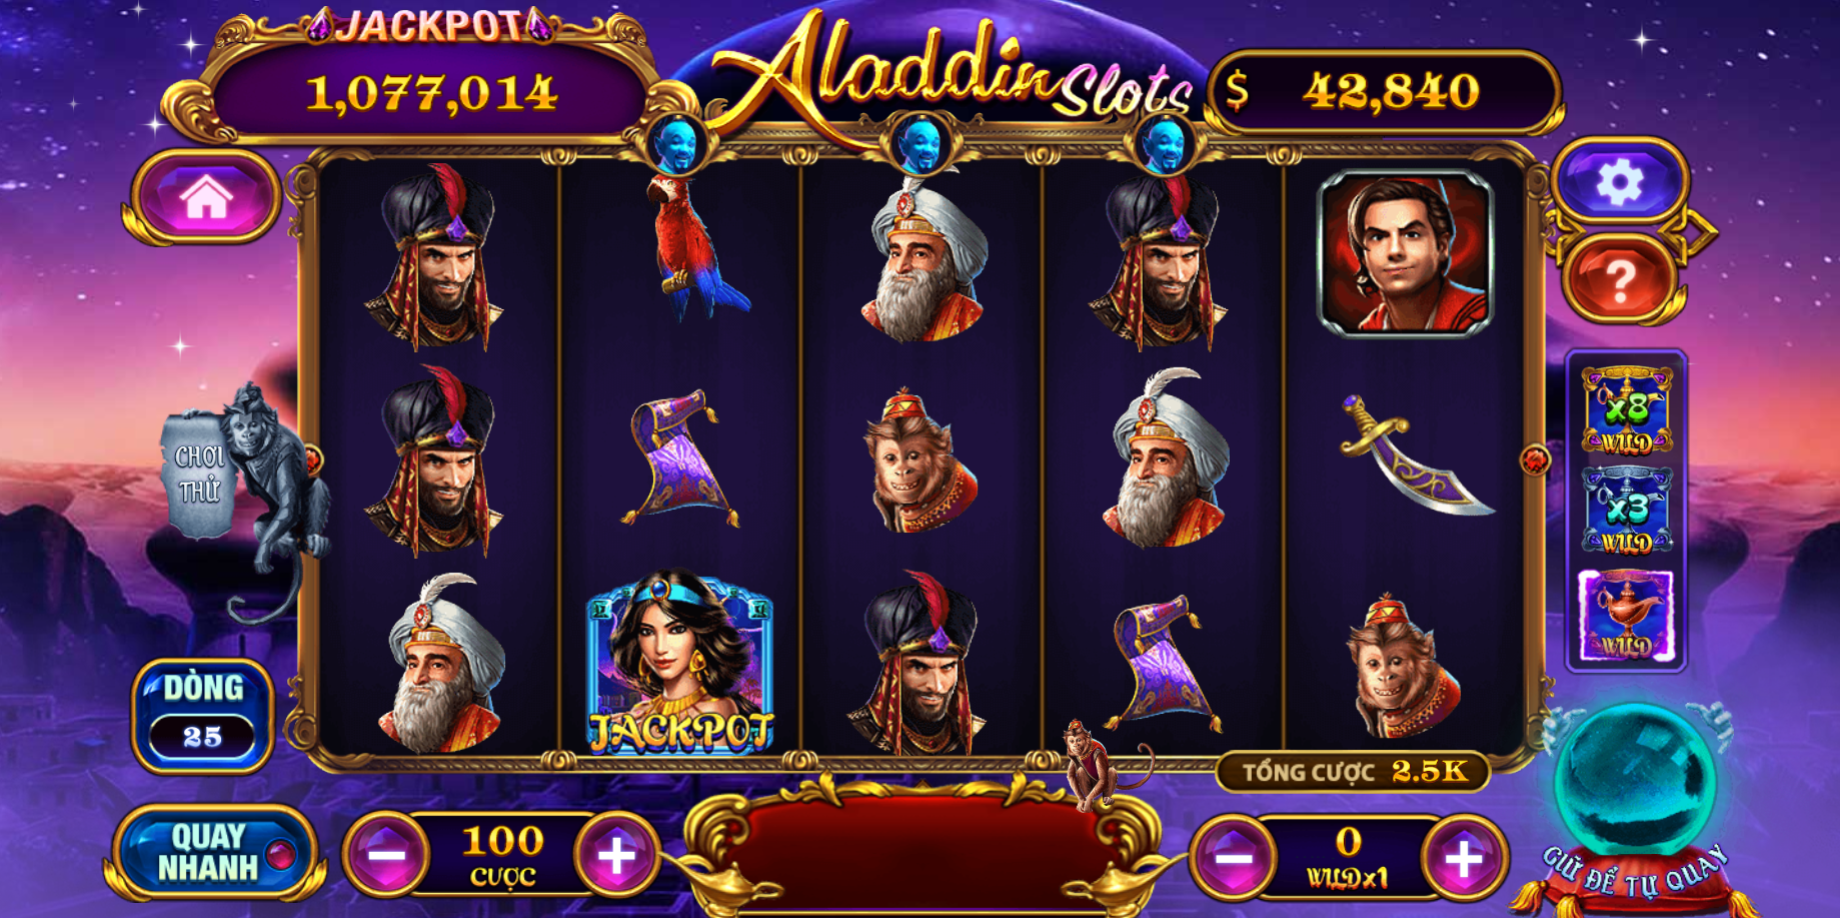 Chiến thuật chơi nổ hũ Aladdin giúp bạn thắng nhiều 